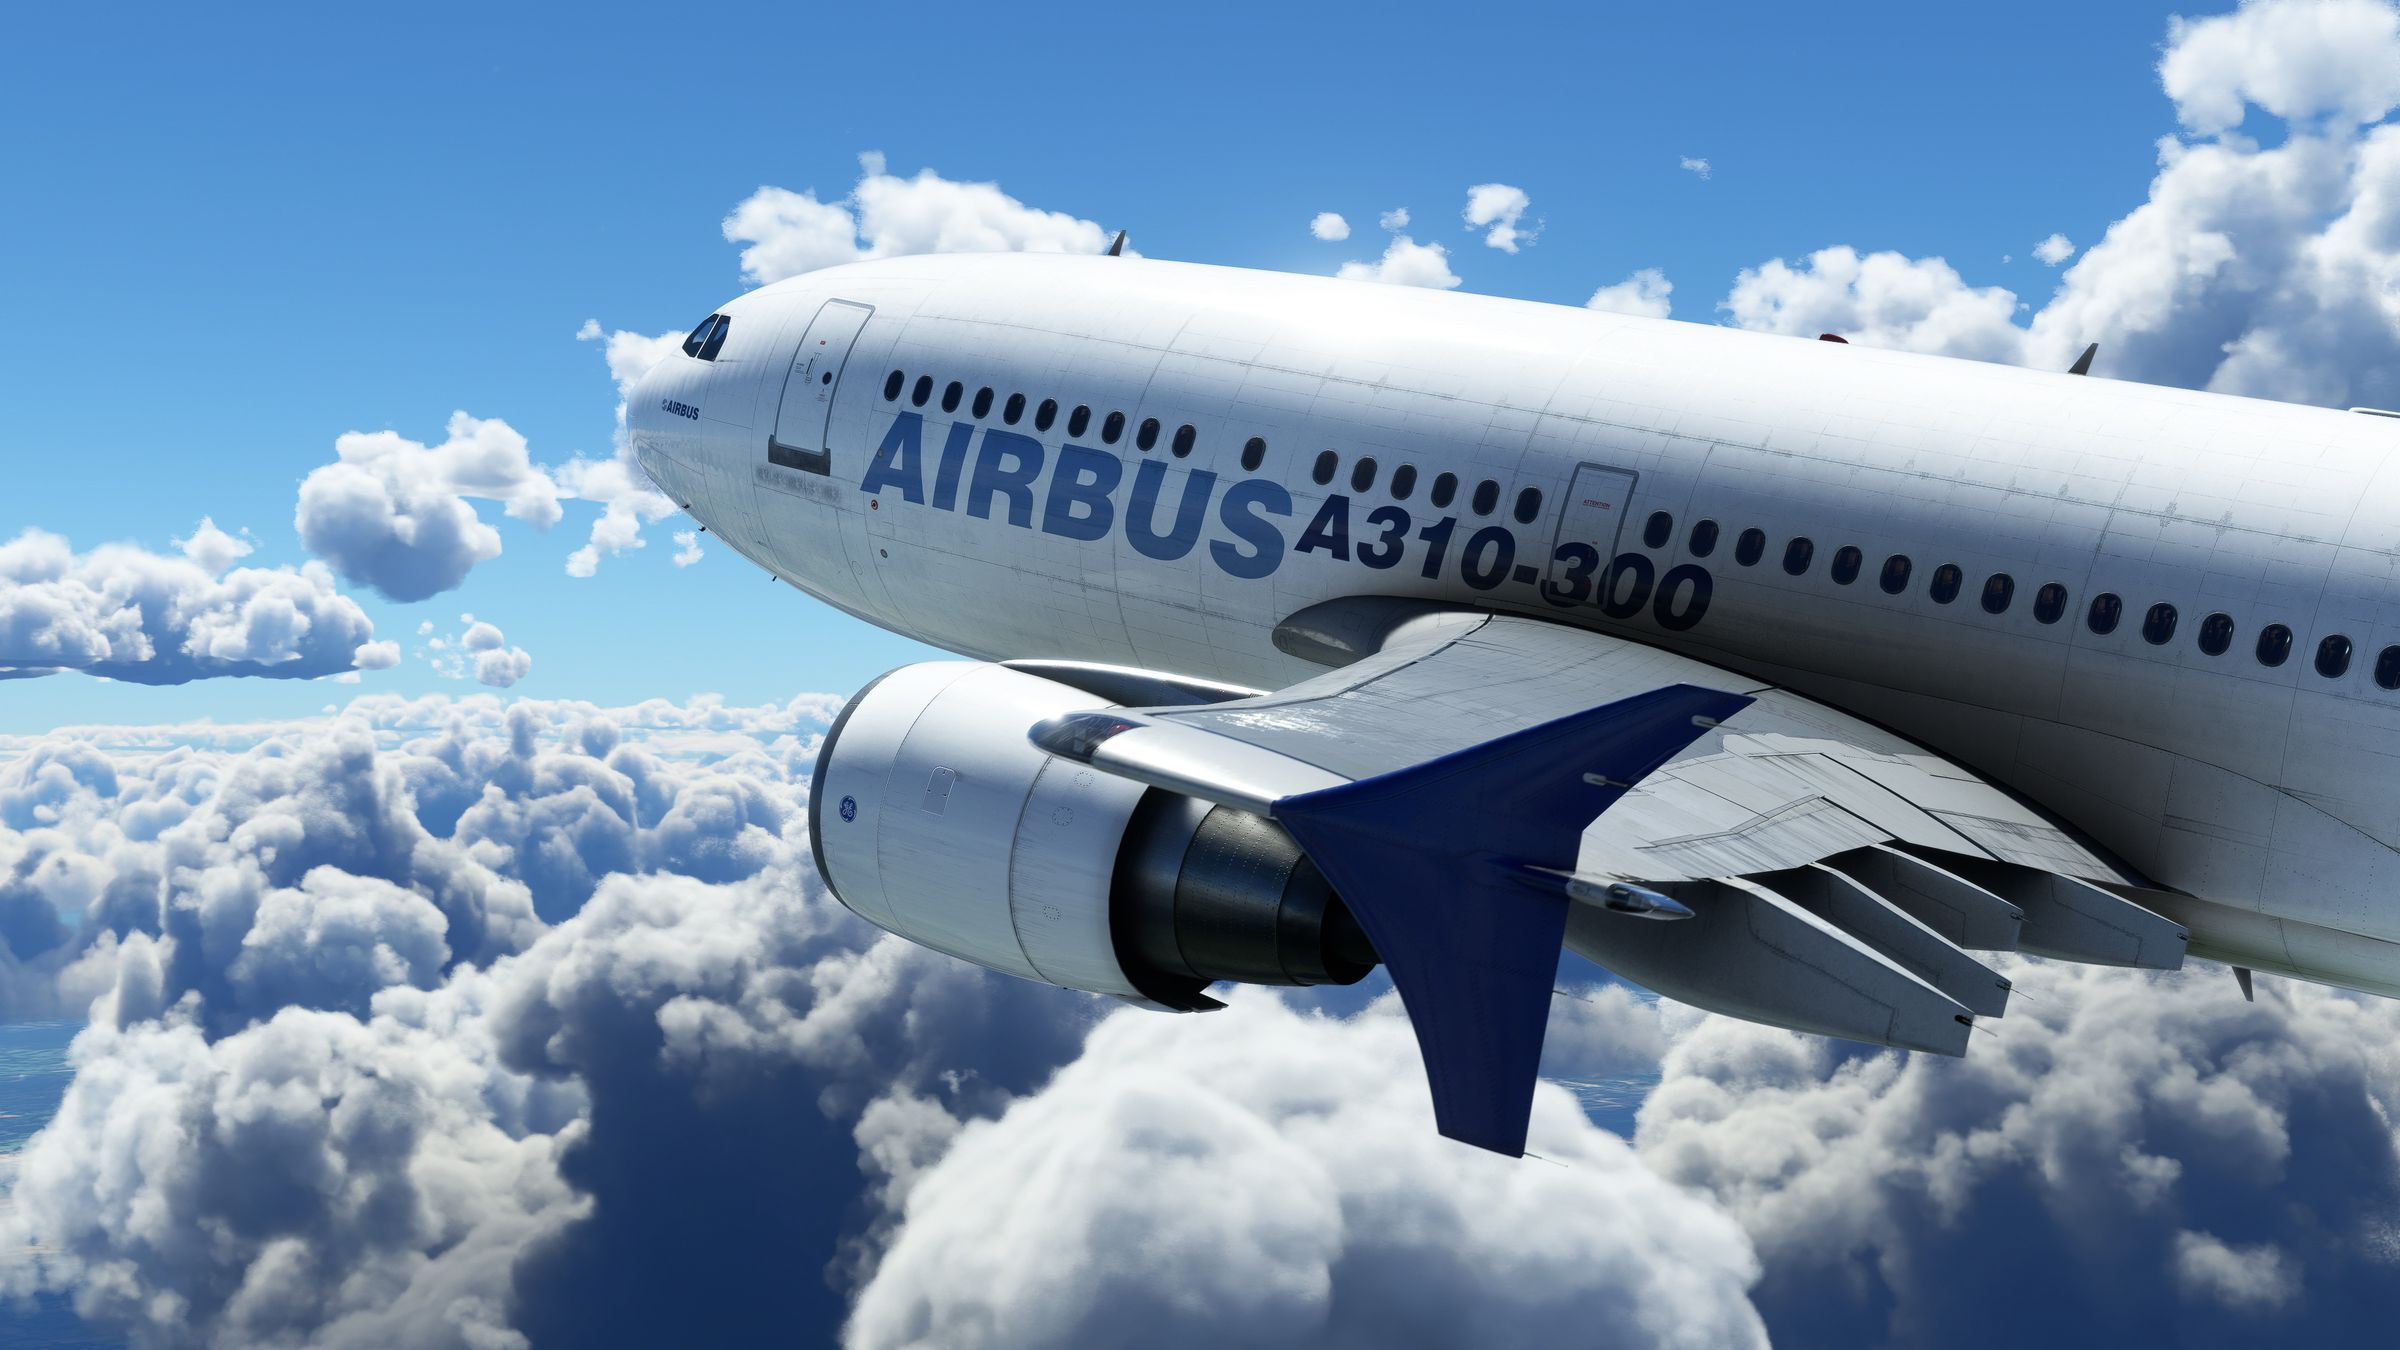 Airbus A310 wis digawe maneh ing Microsoft Flight Simulator.